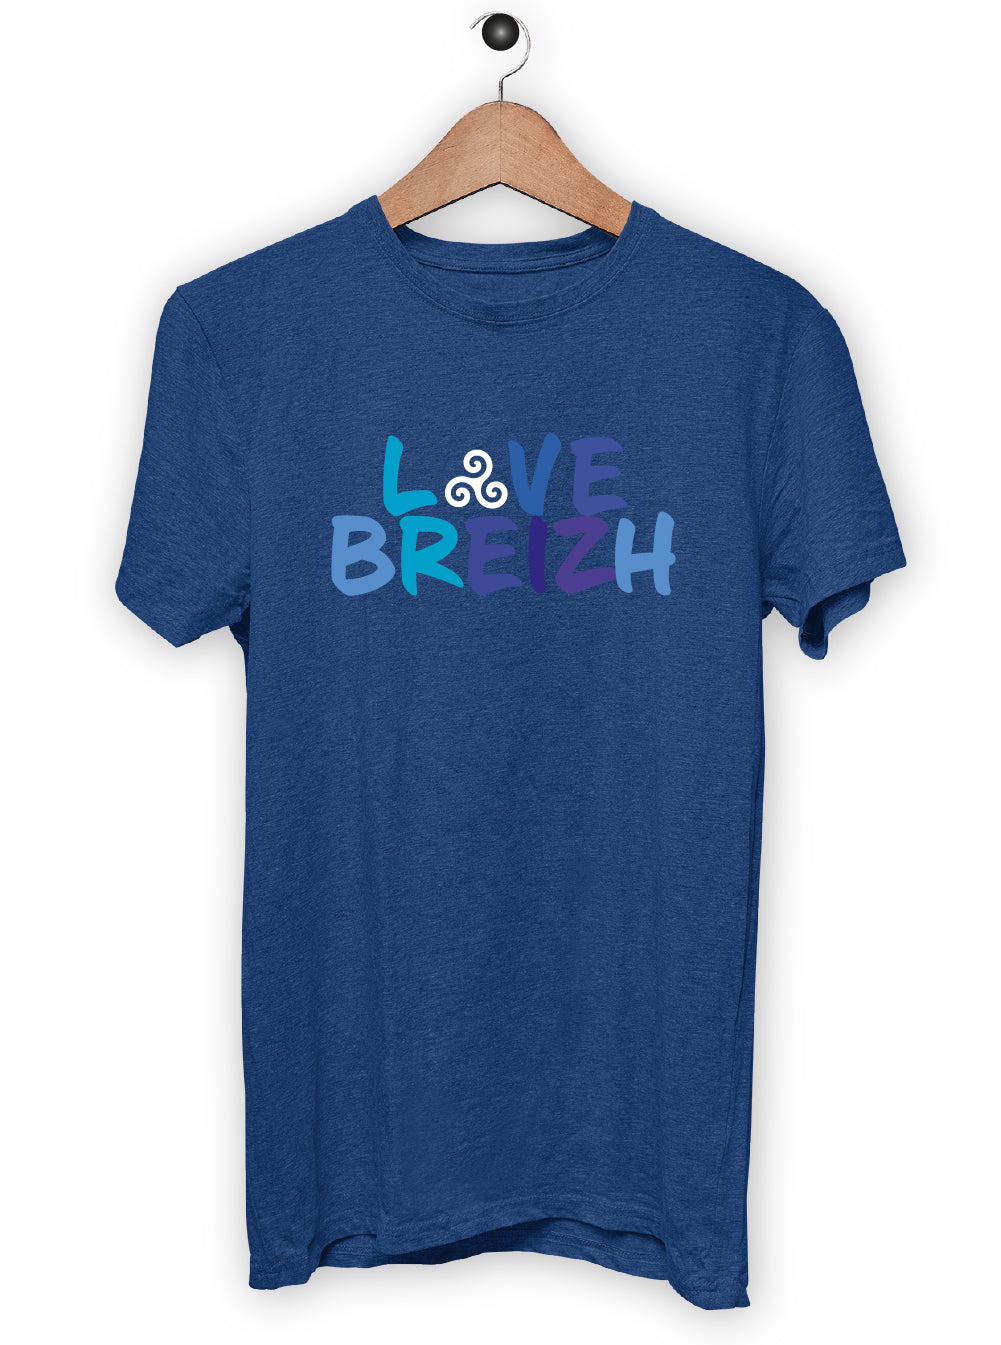 T-Shirt "LOVE BREIZH"